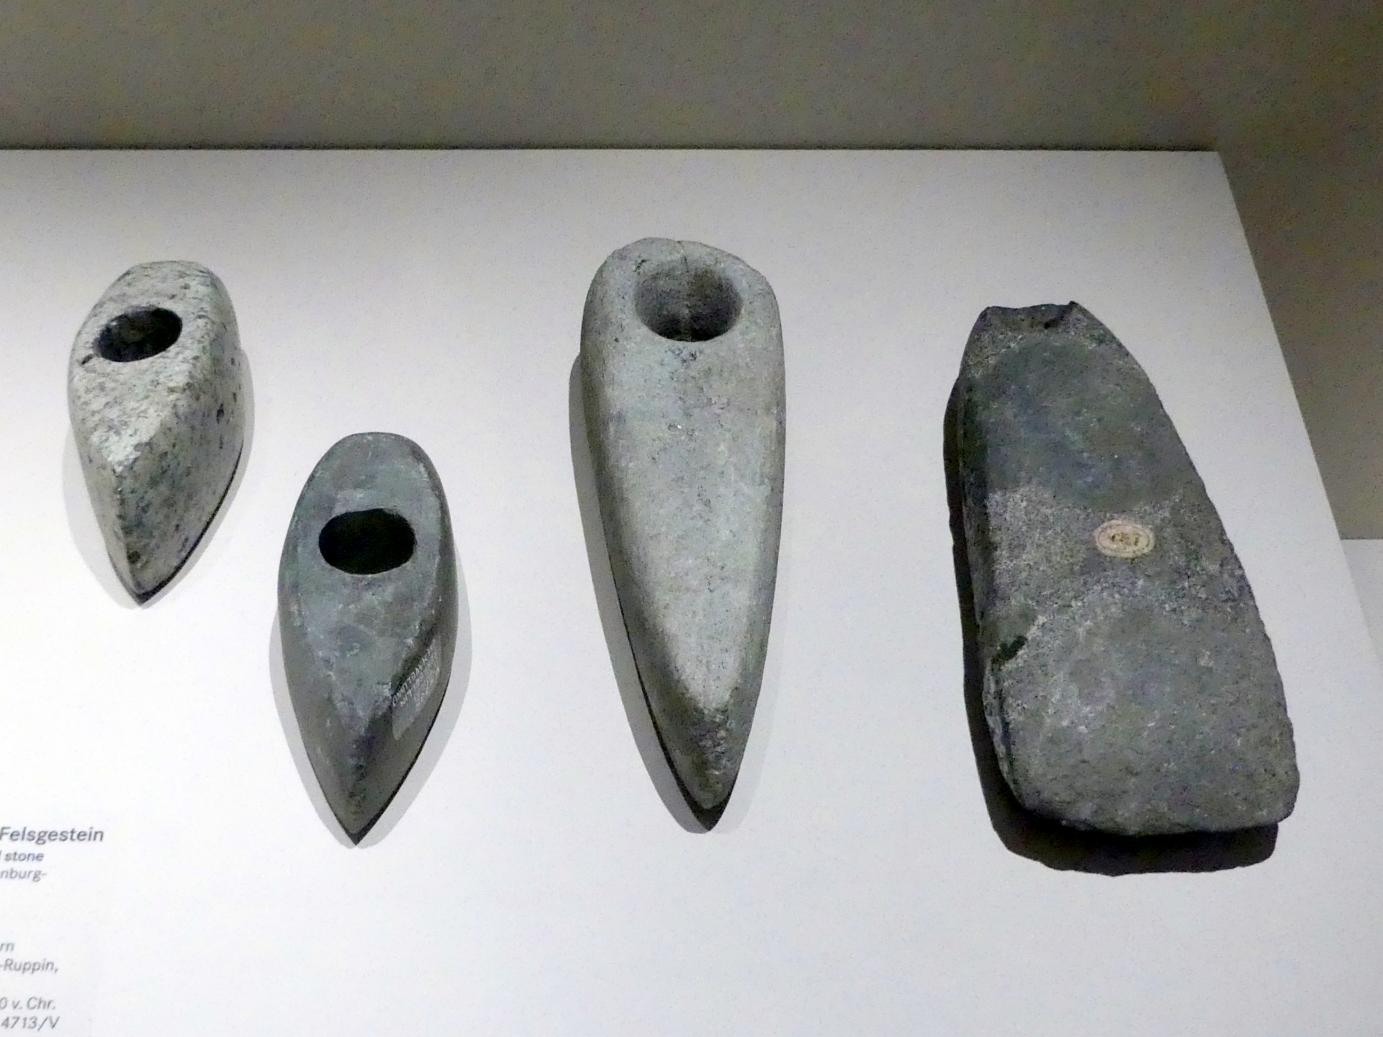 Schaftlochaxt, Nordisches Neolithikum, 4400 - 2350 v. Chr., 3500 - 2800 v. Chr., Bild 1/2